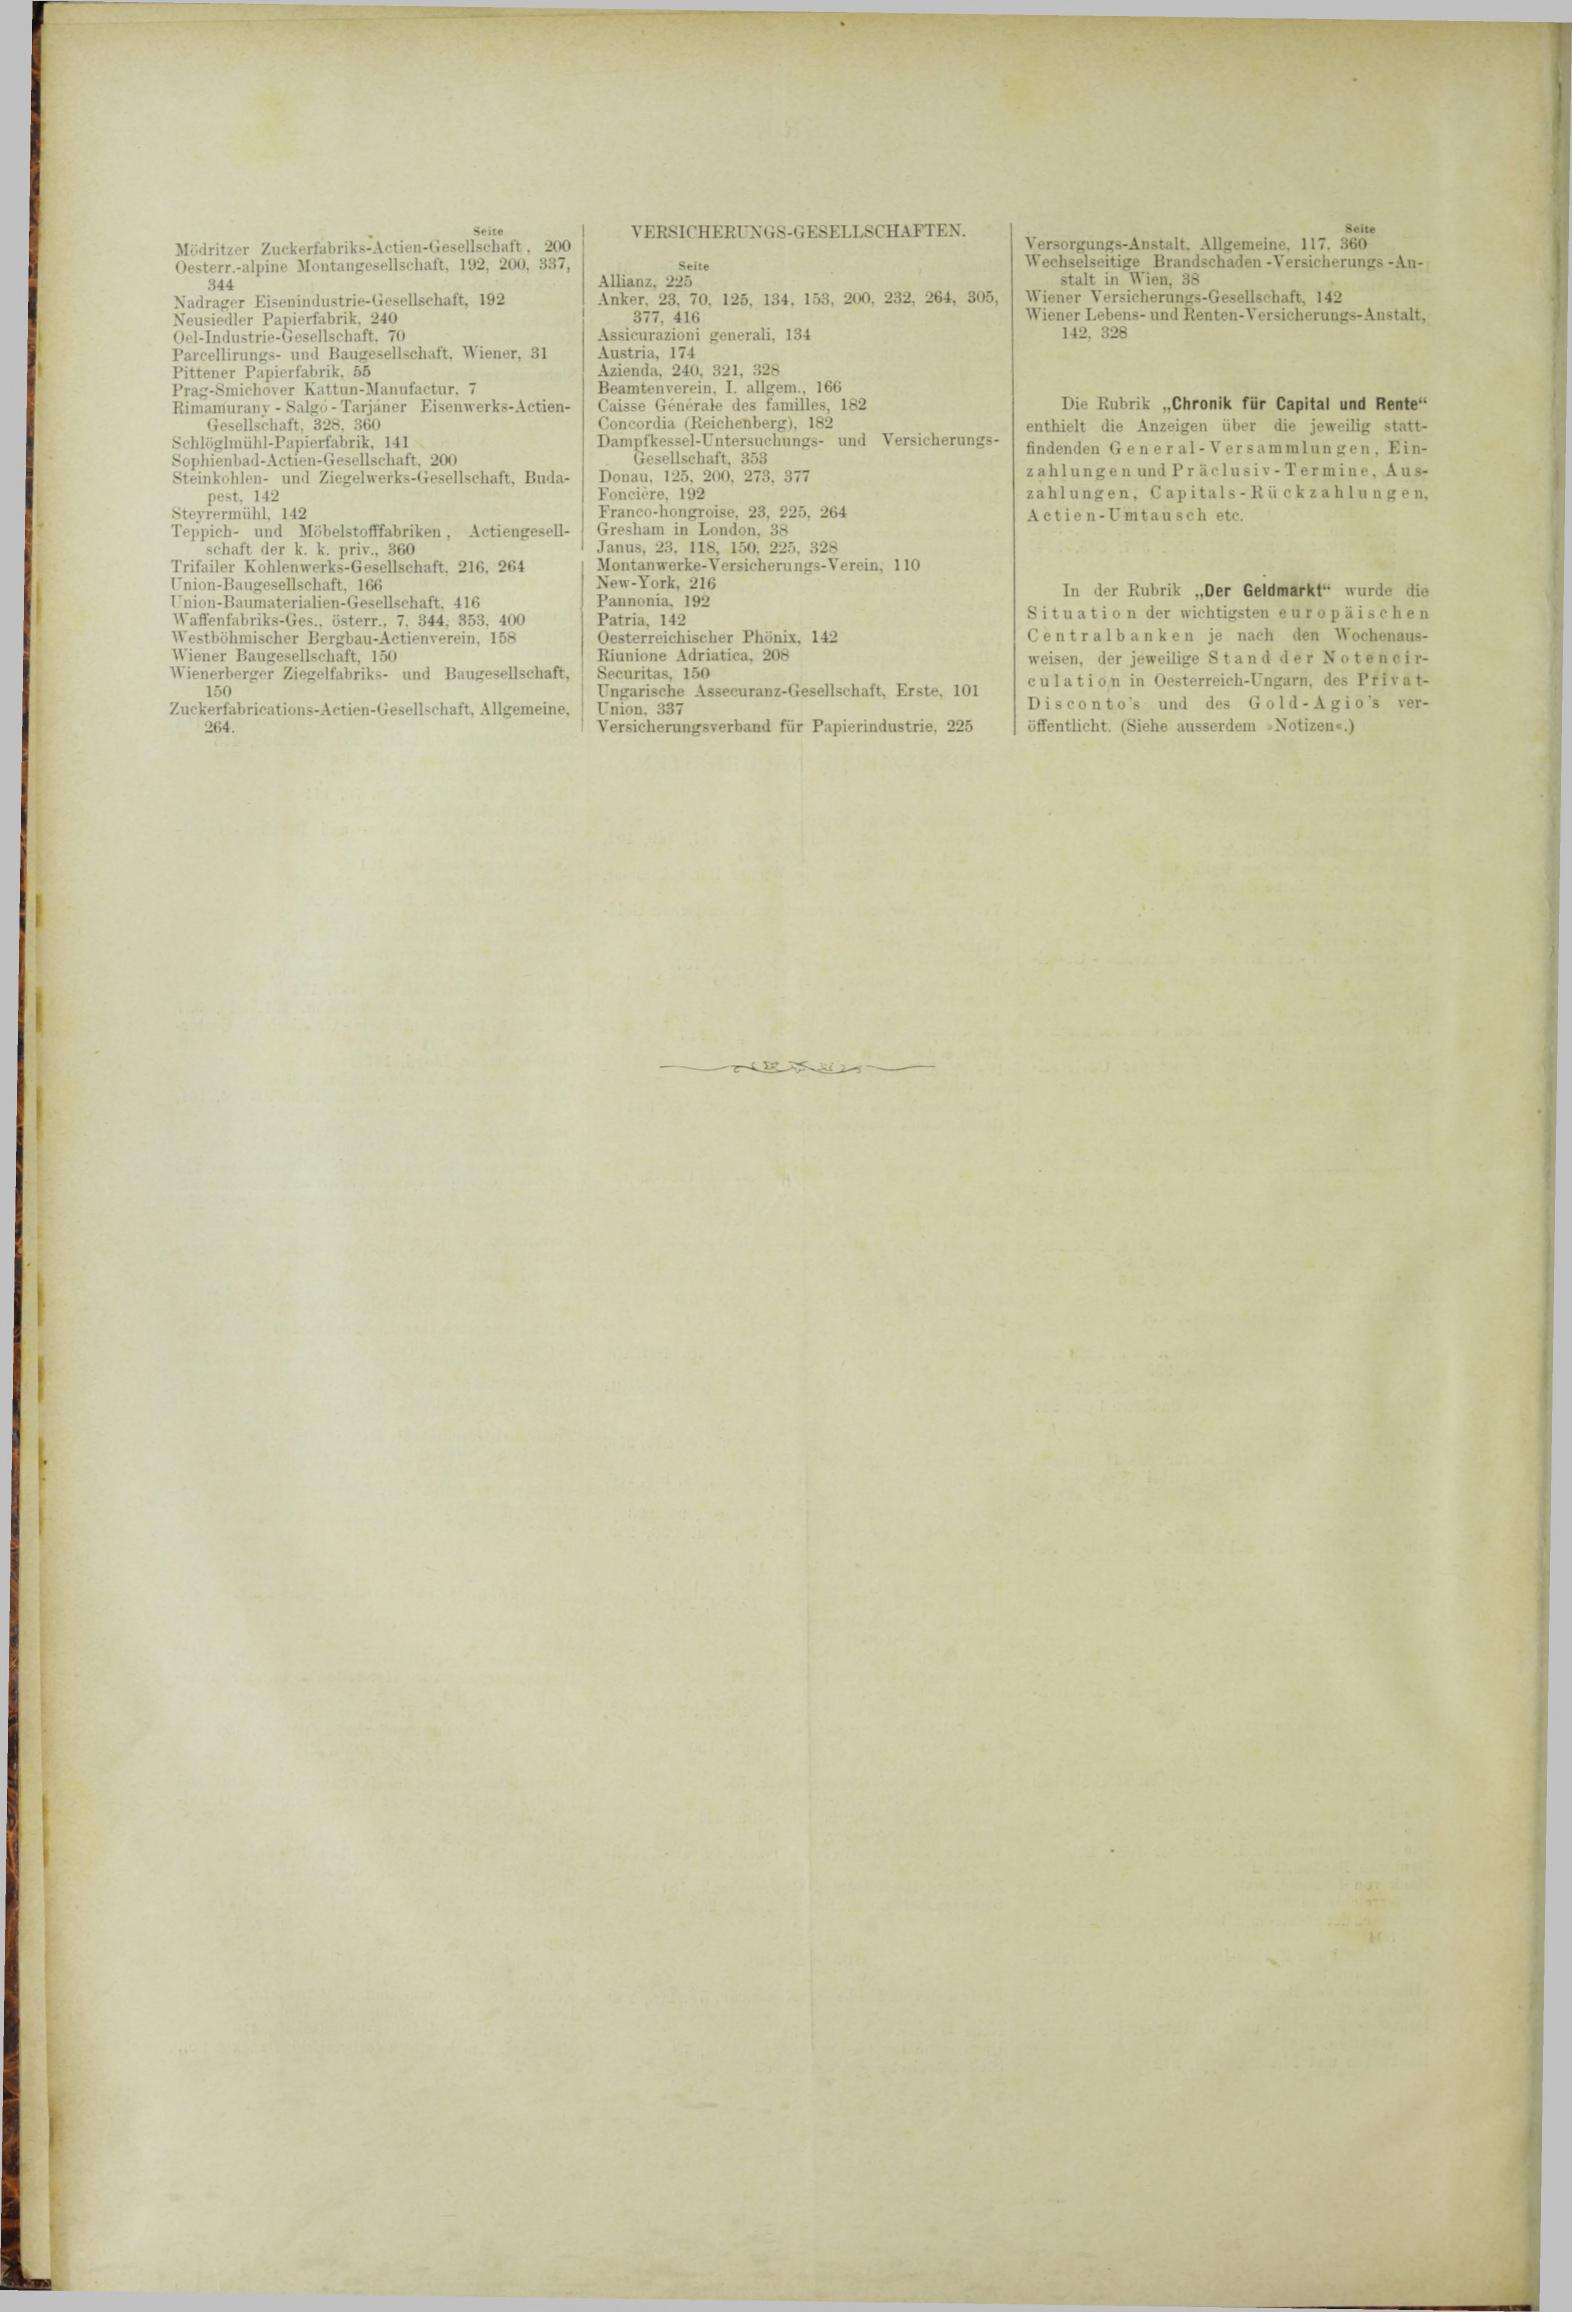 Der Tresor 05.07.1883 - Seite 12